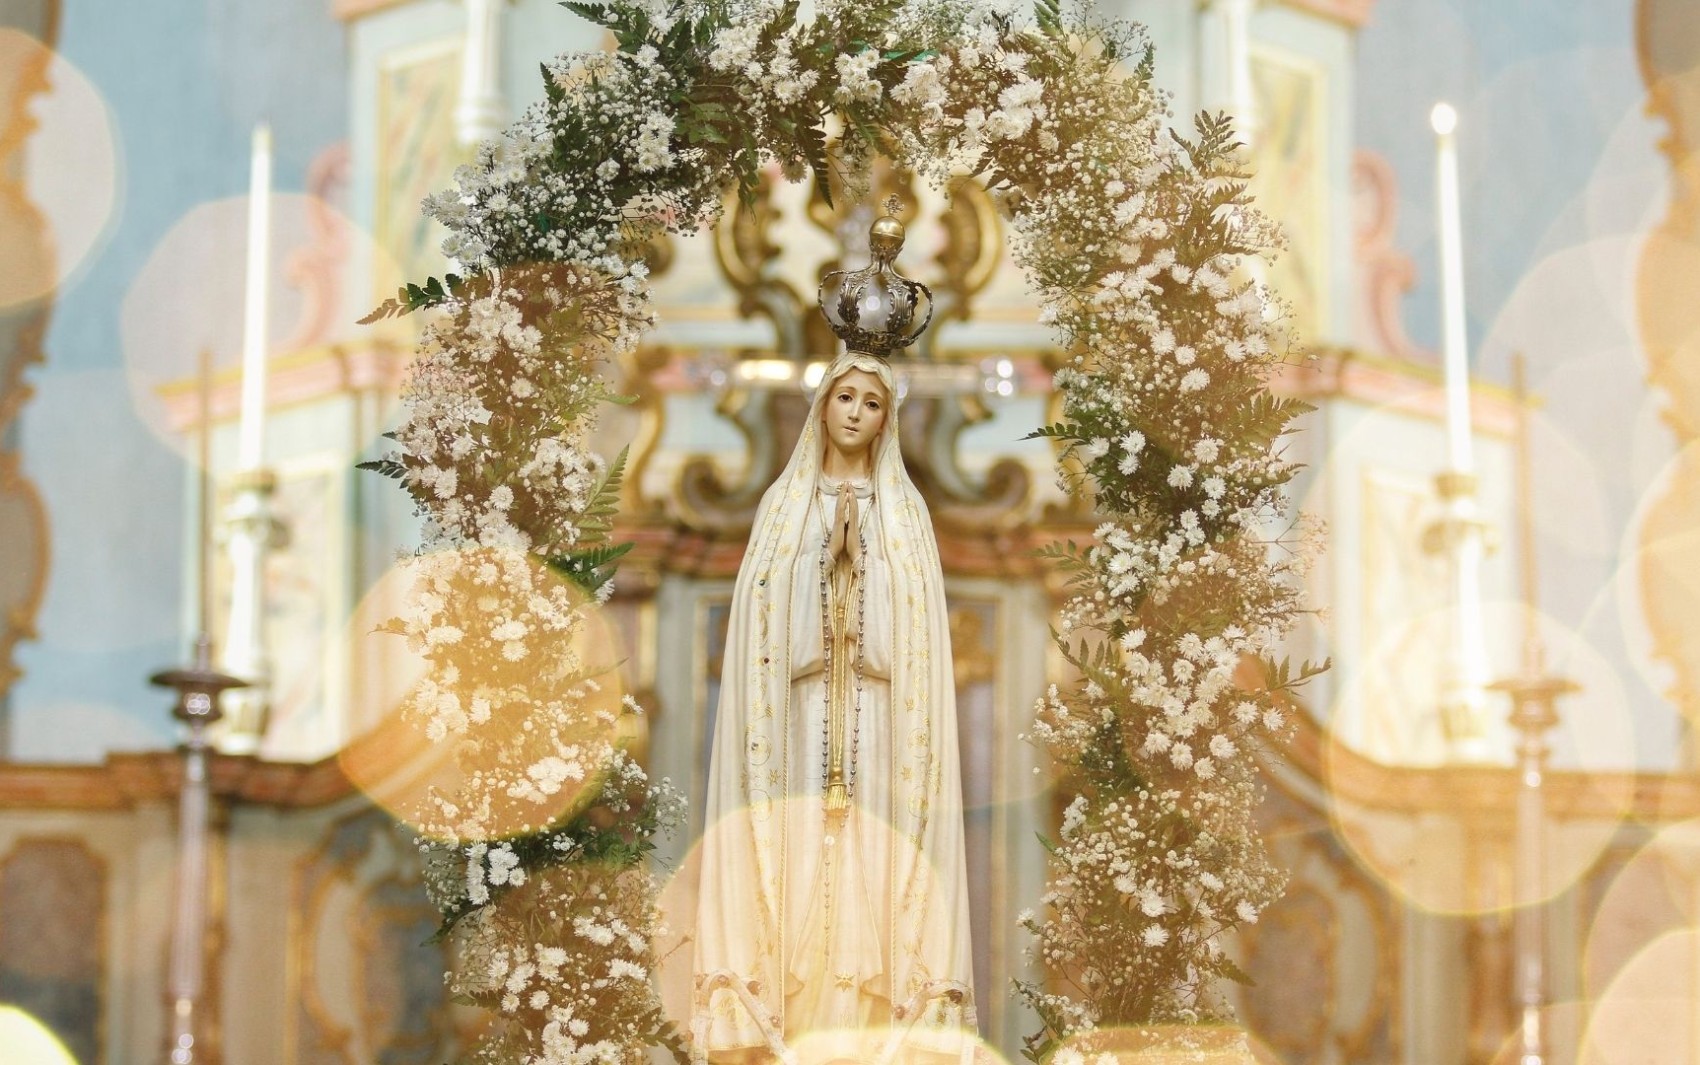 Festa de Nossa Senhora de Fátima chega a 4ª edição em Três Rios